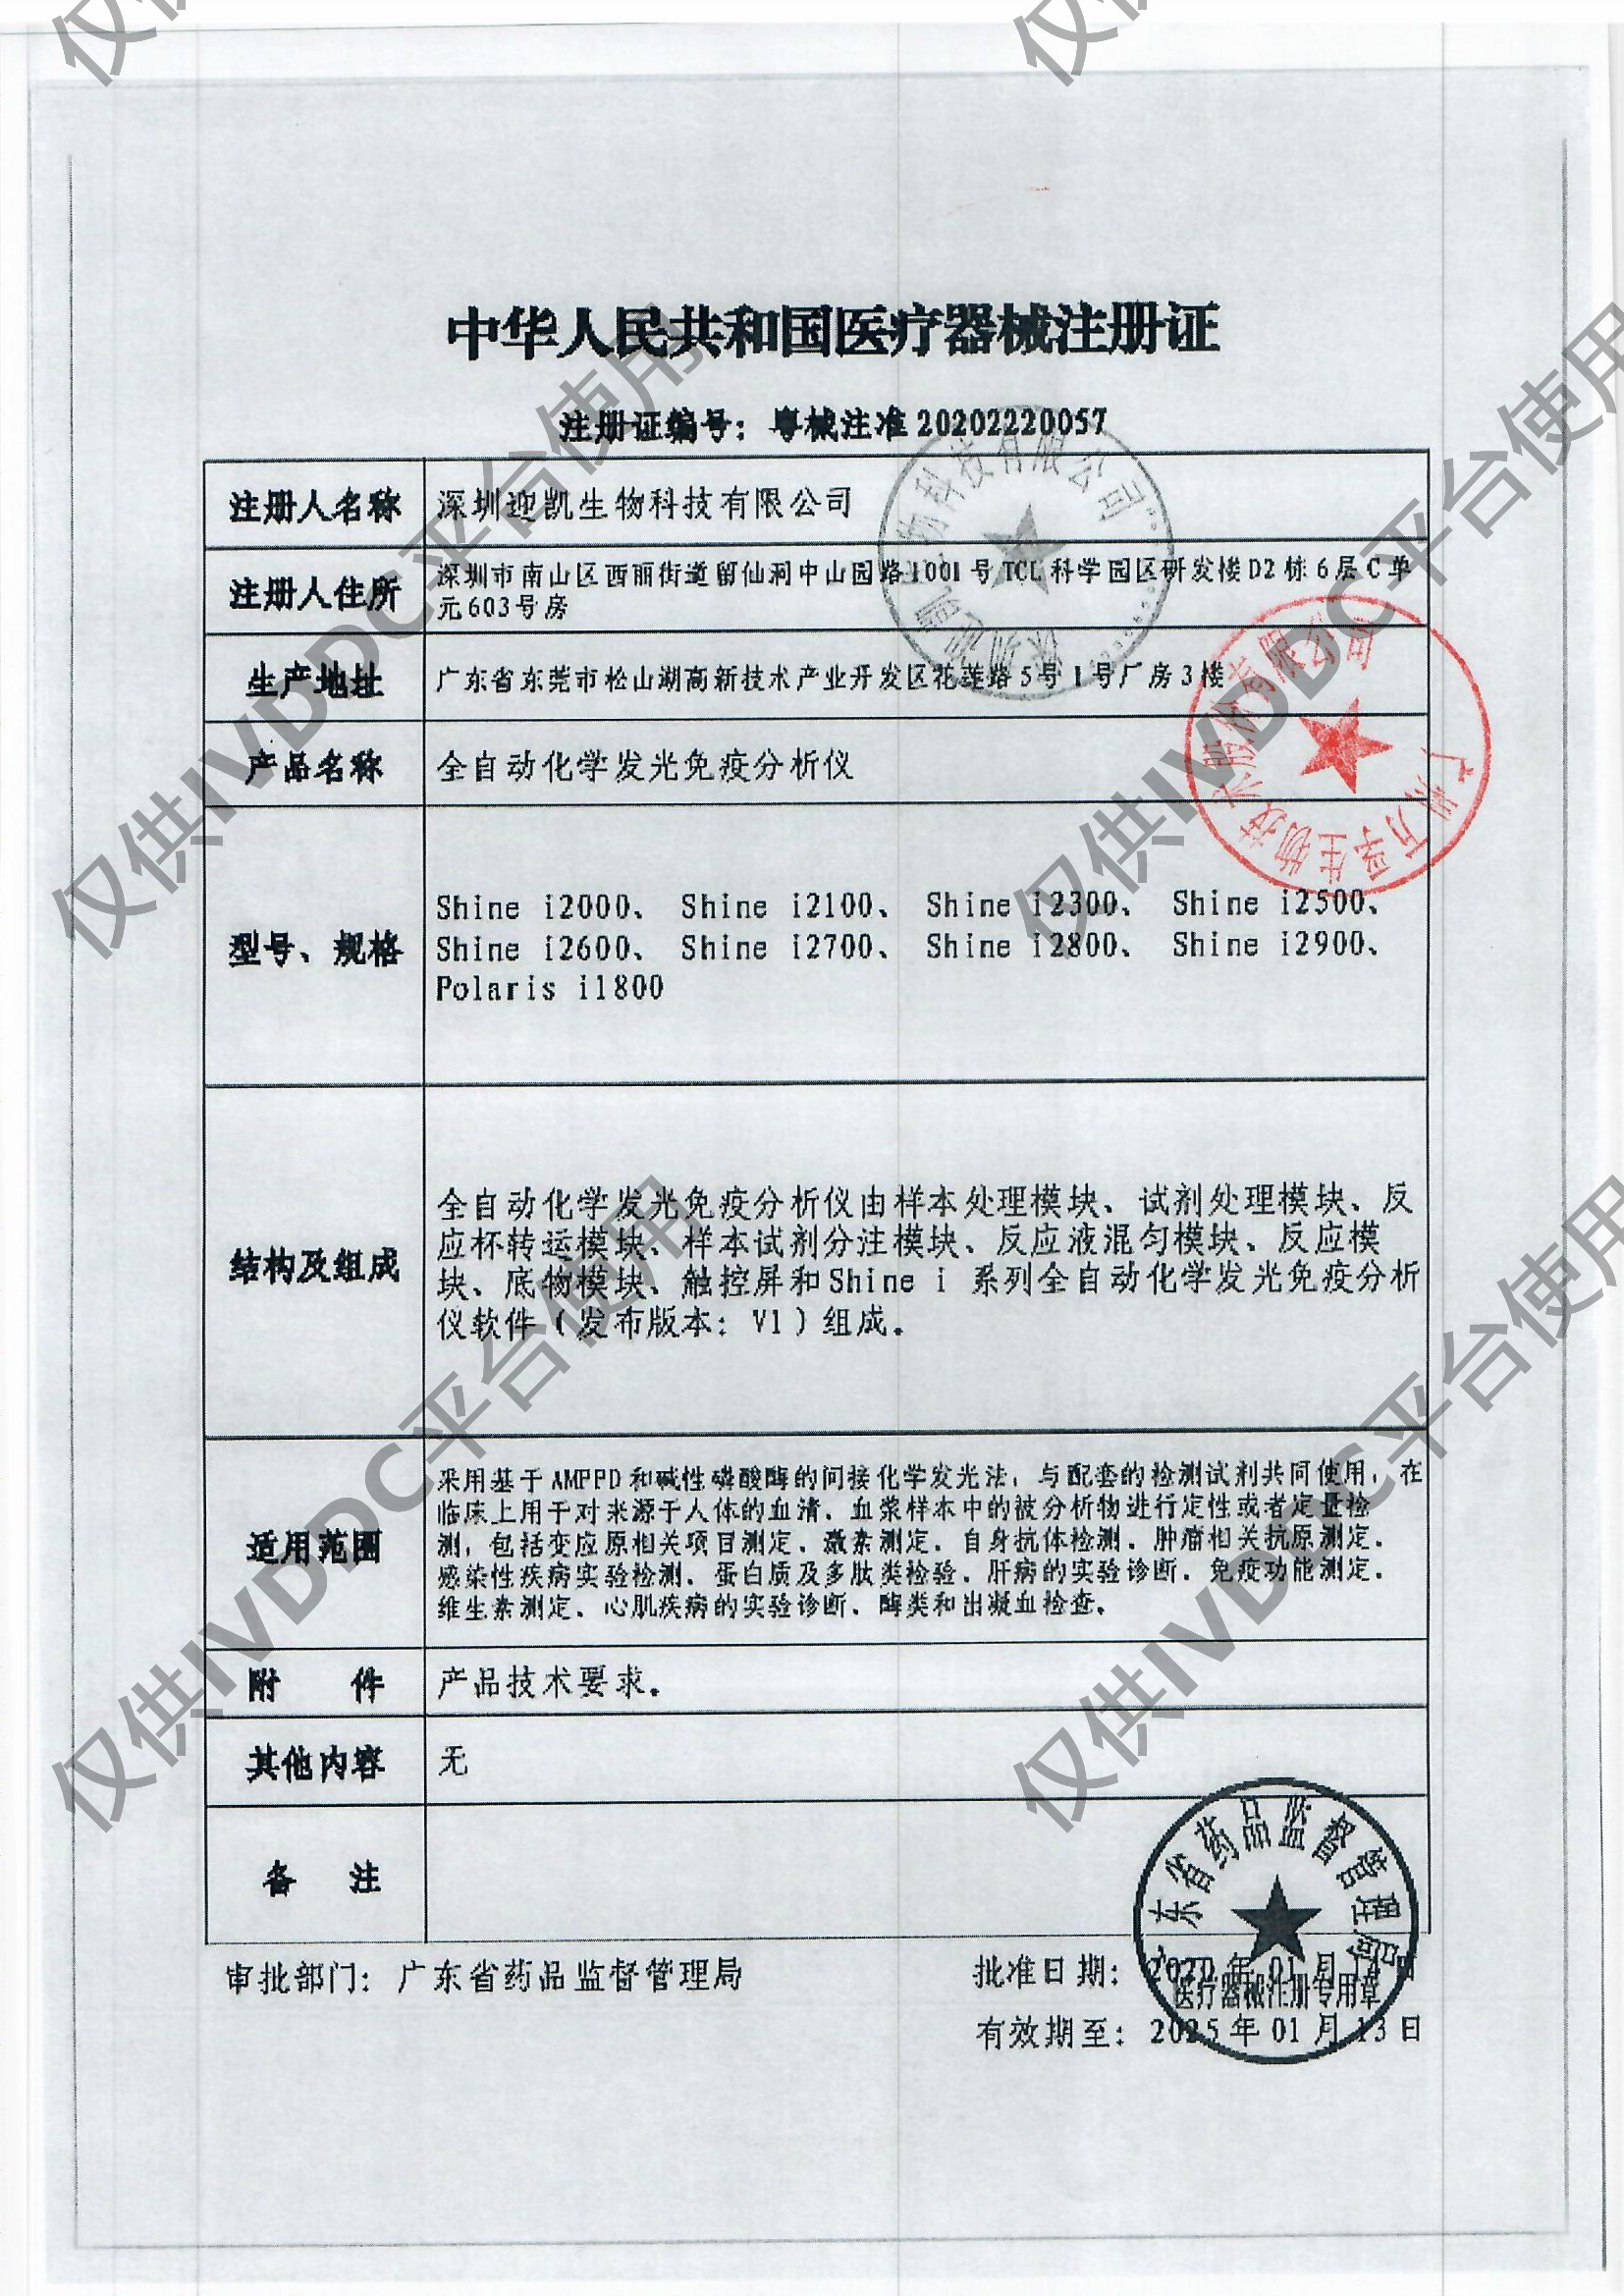 【广州万孚】 全自动化学发光免疫分析仪 Shine i2900注册证